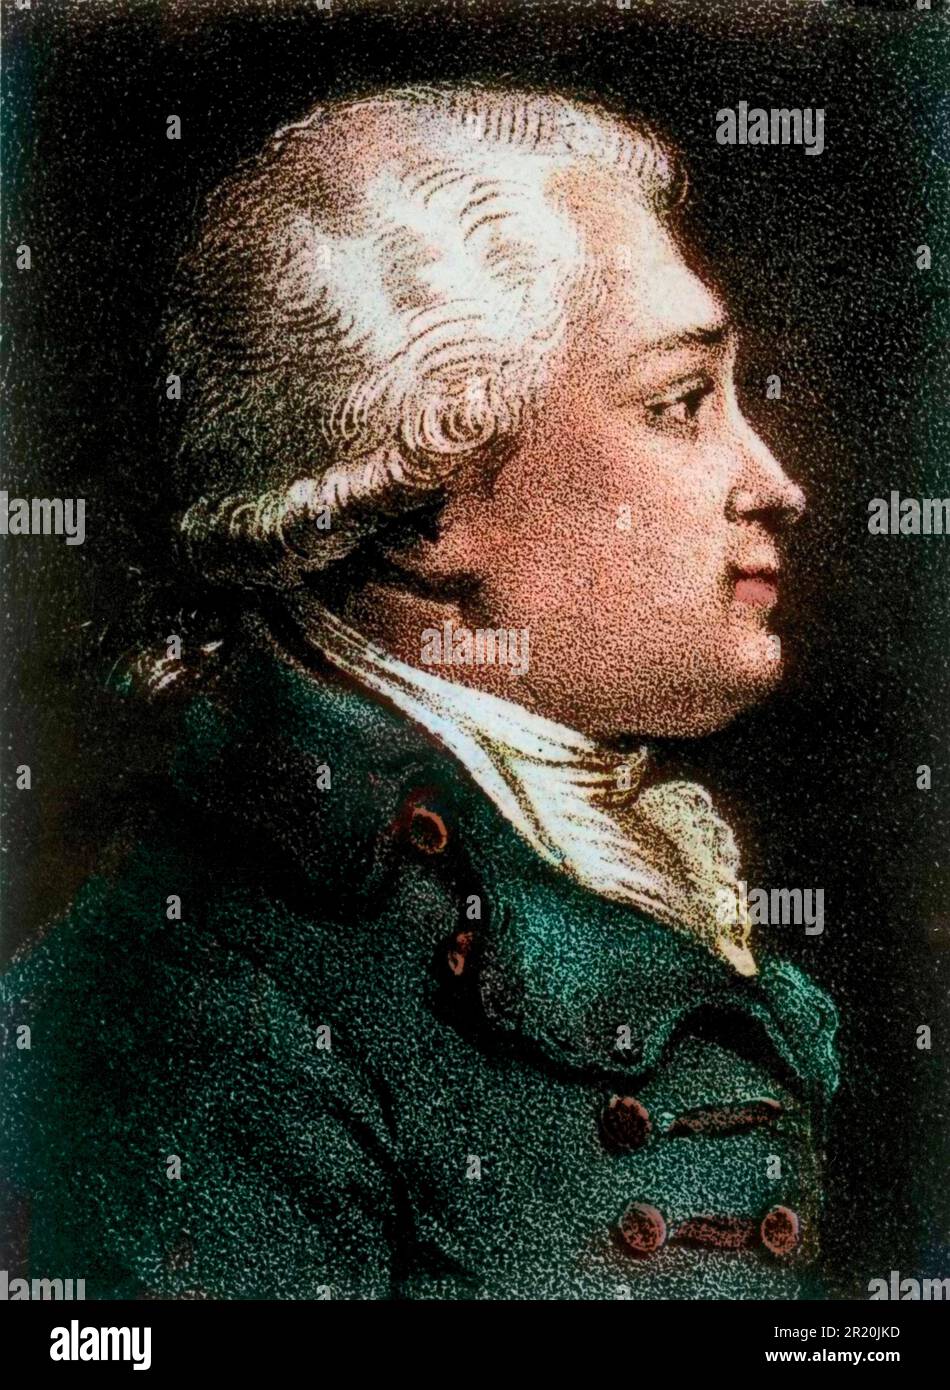 Portrait de Felix Vicq d'Azyr (1748-1794), medecin et anatomiste francais - Gravure19eme siecle Stock Photo